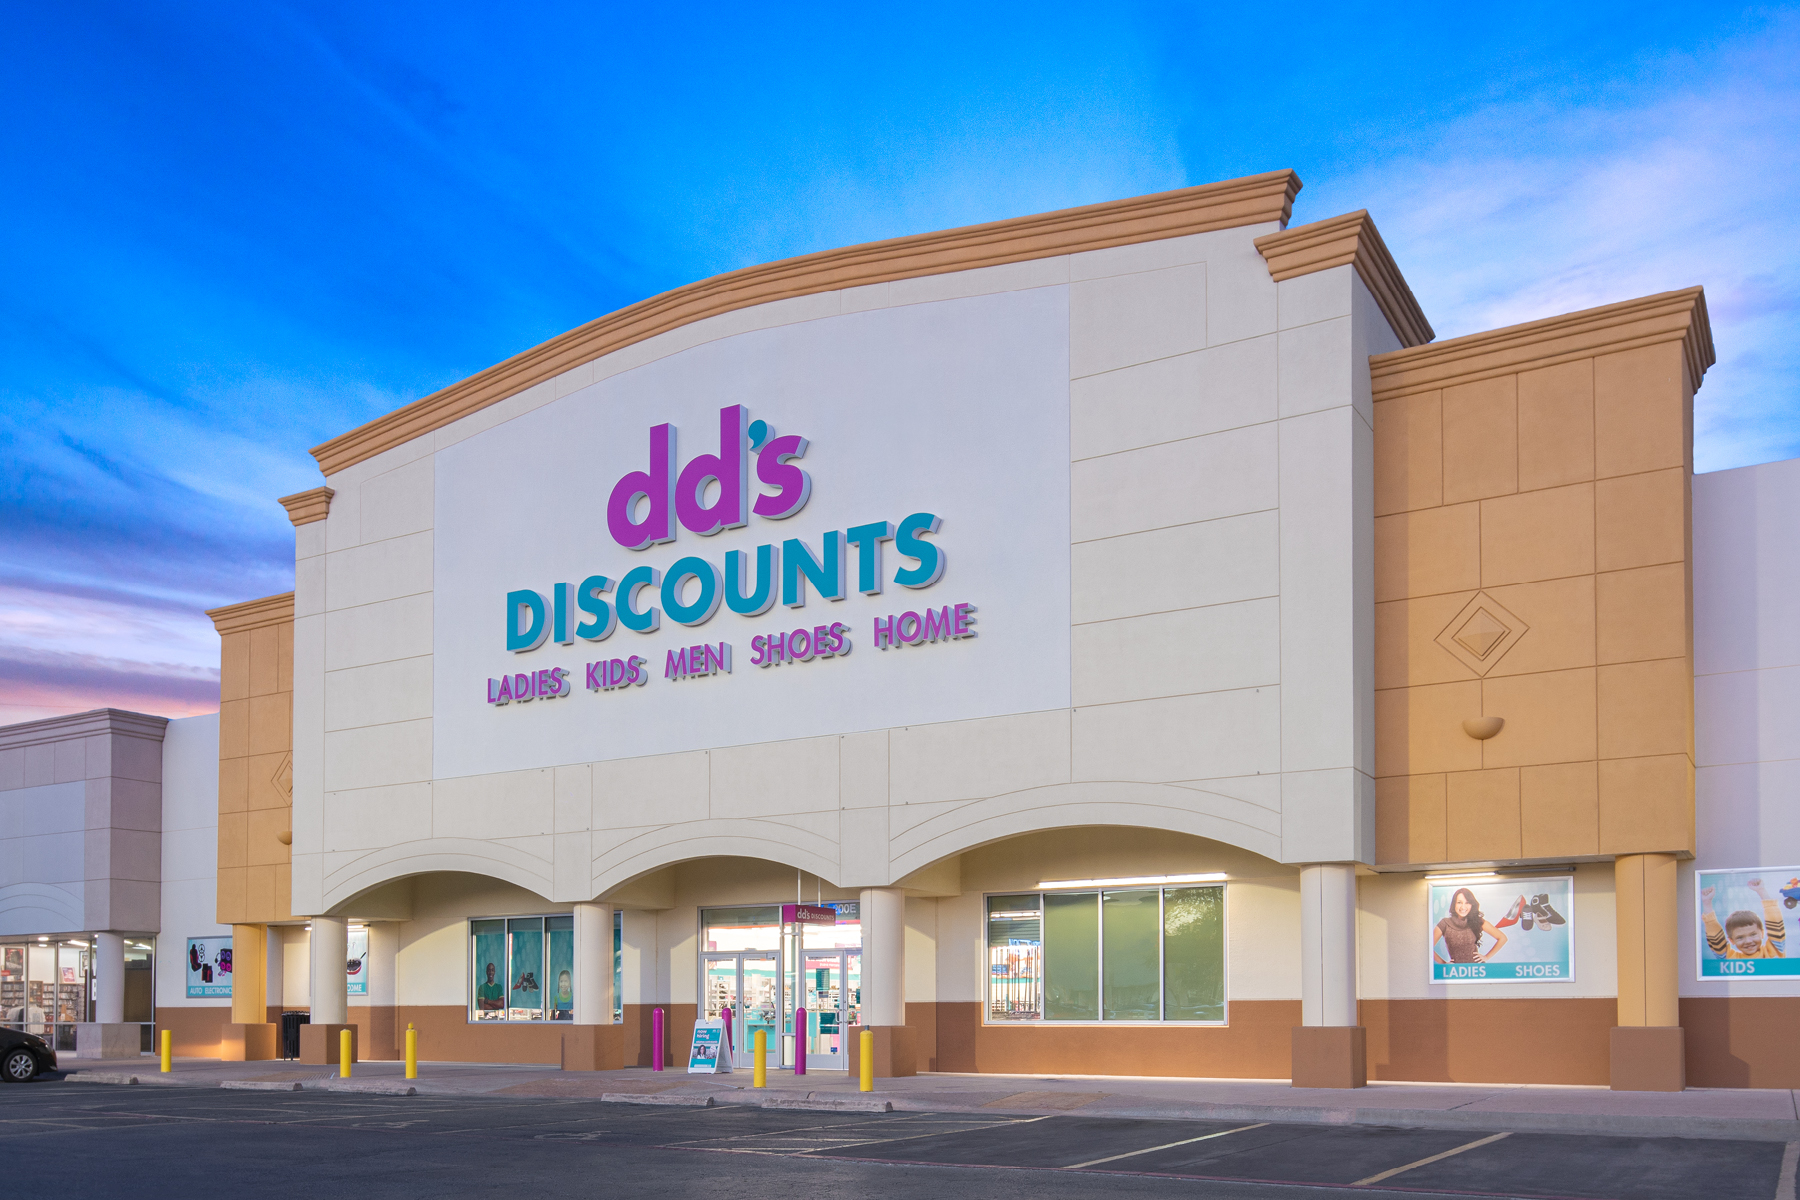 dd-s-discounts-arch-con-corporation